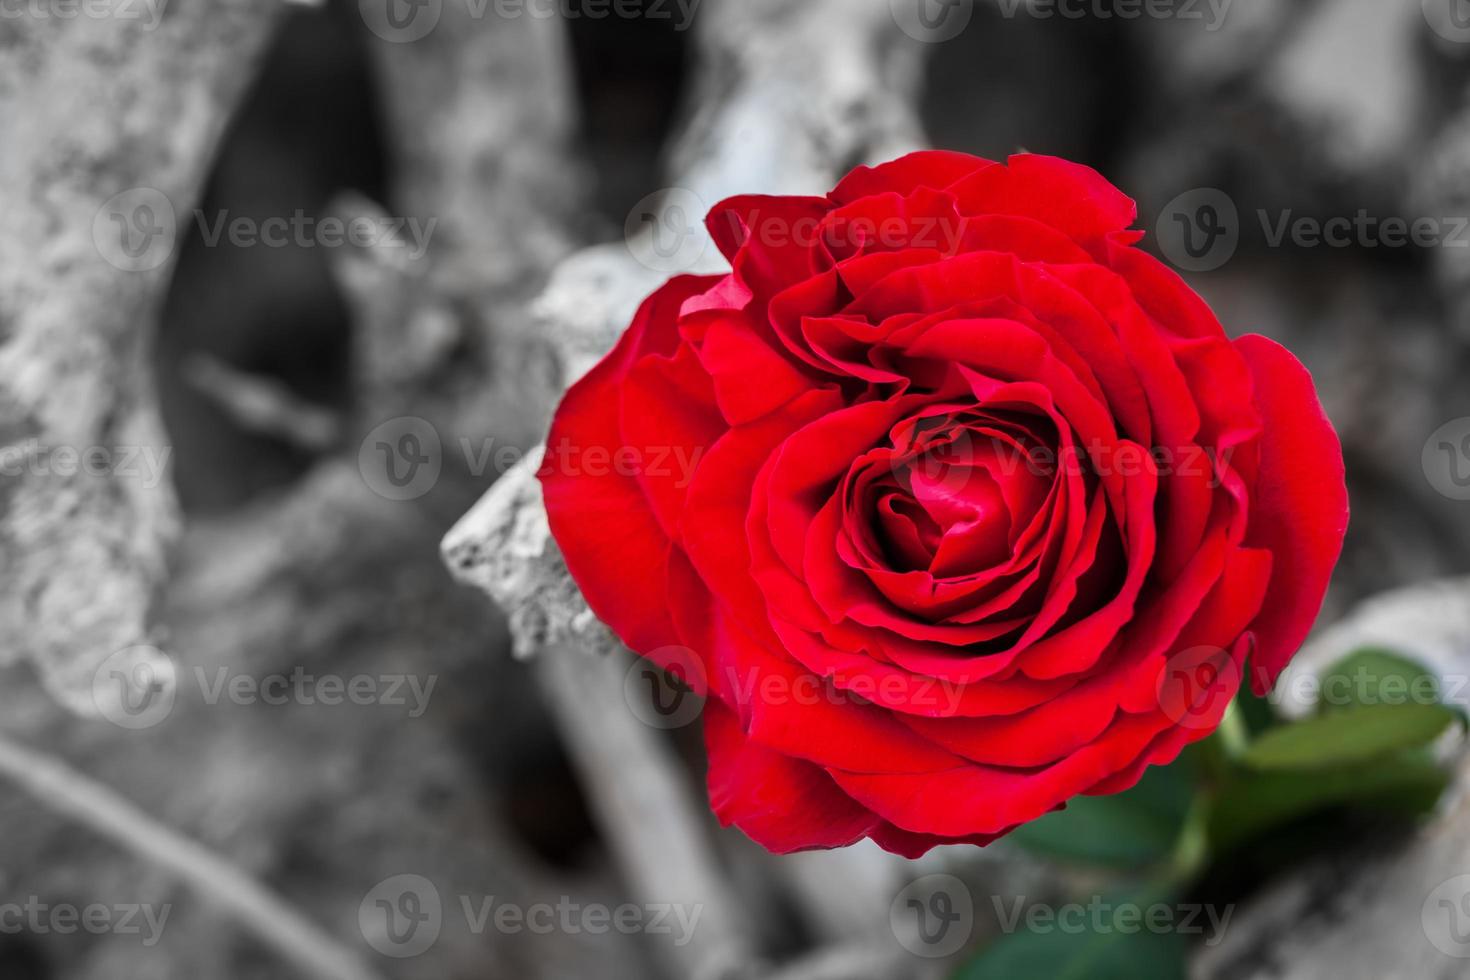 rosa rossa sulla spiaggia. colore contro bianco e nero. amore, romanticismo, concetti malinconici. foto